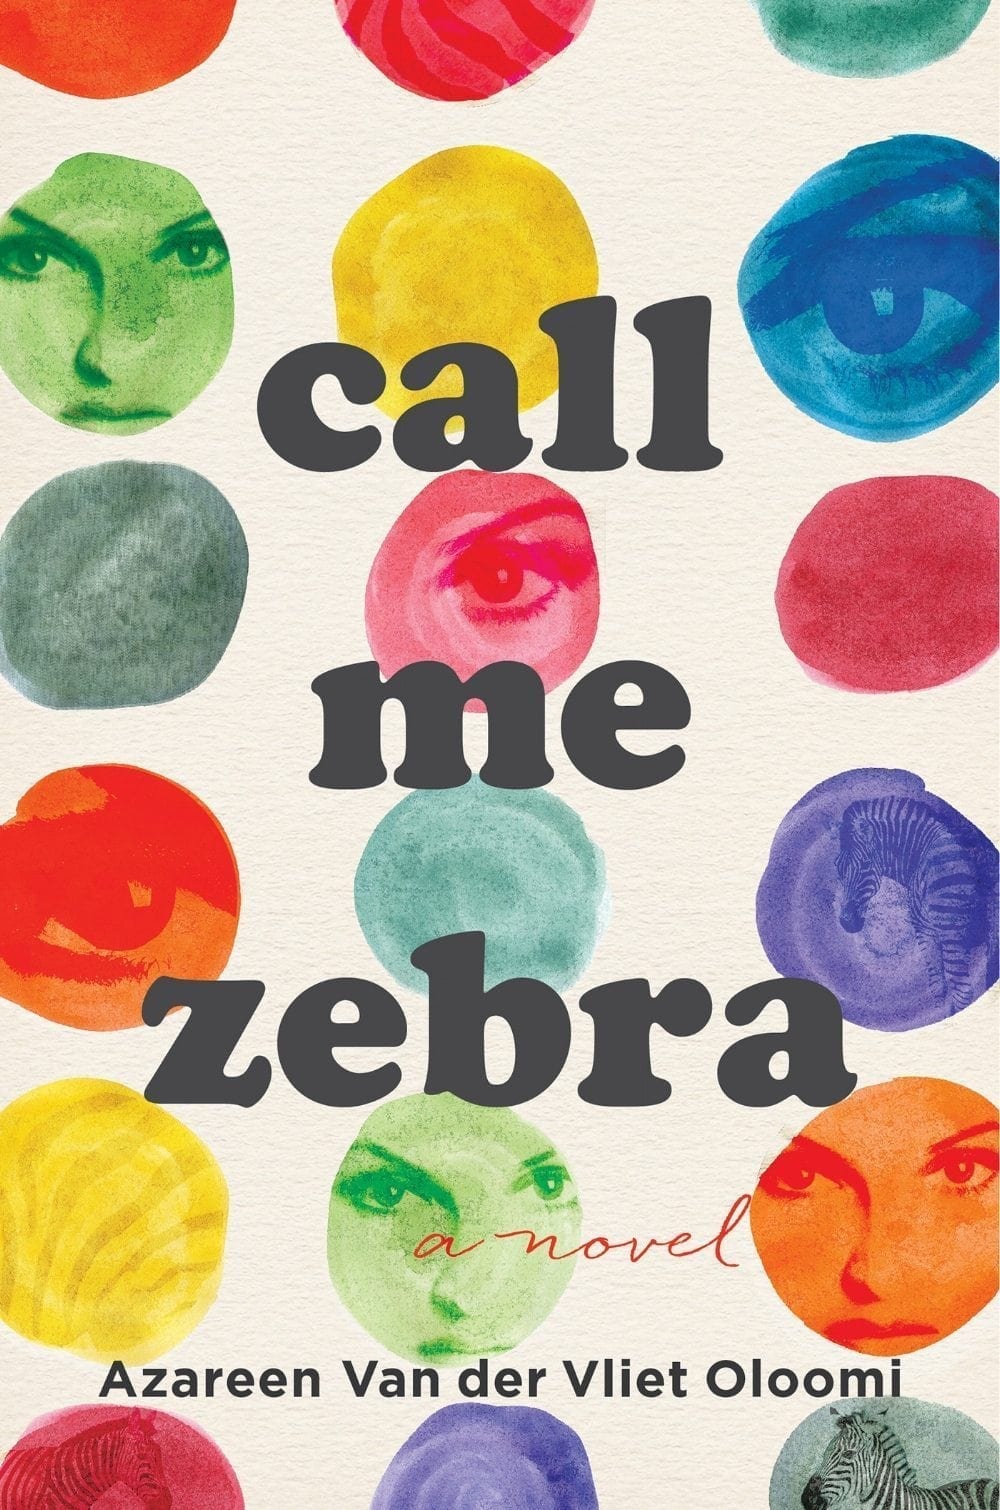 Call Me Zebra by Azareen Van der Vliet Oloomi